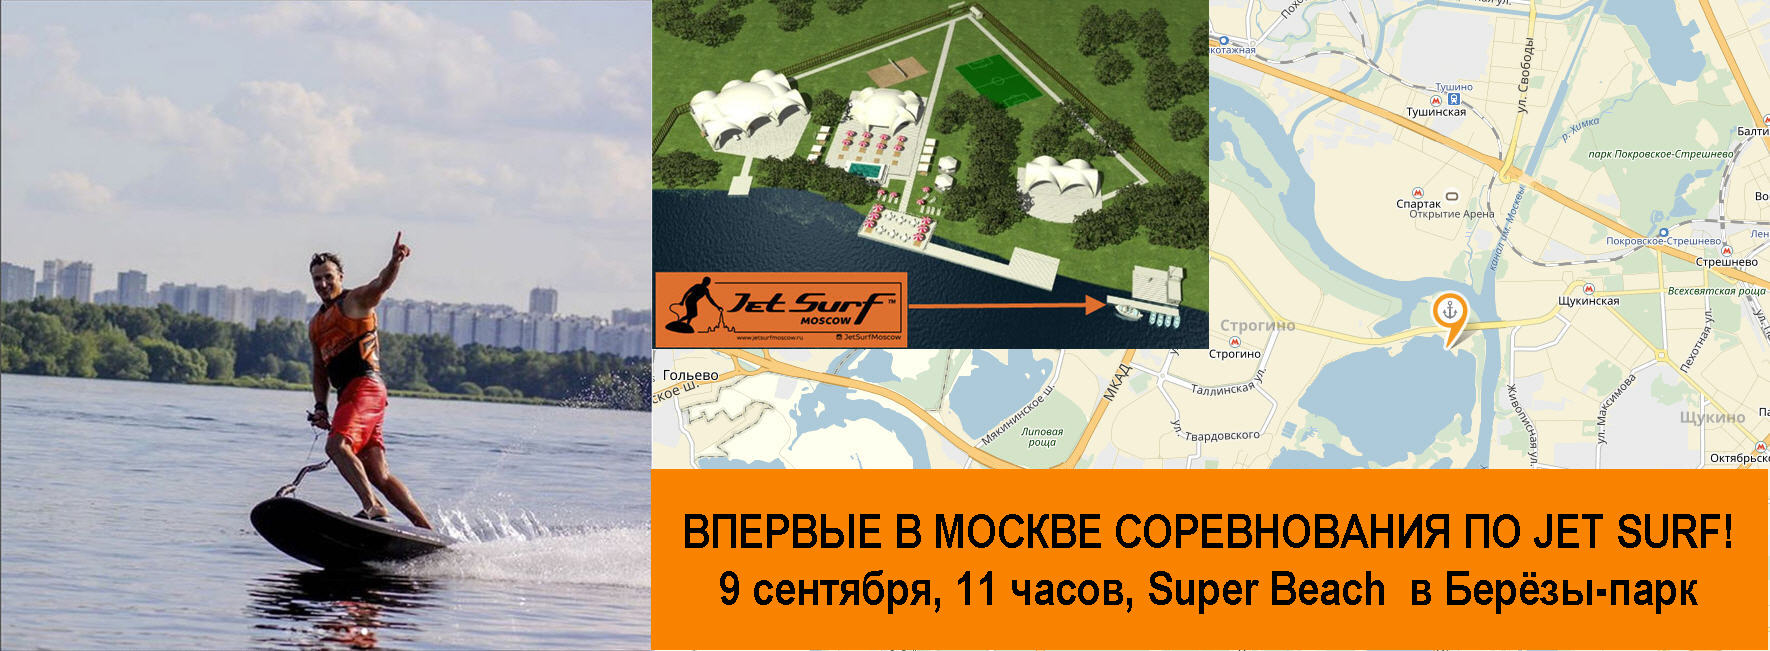 Соревнования по Jet Surf в Москве 9 сентября